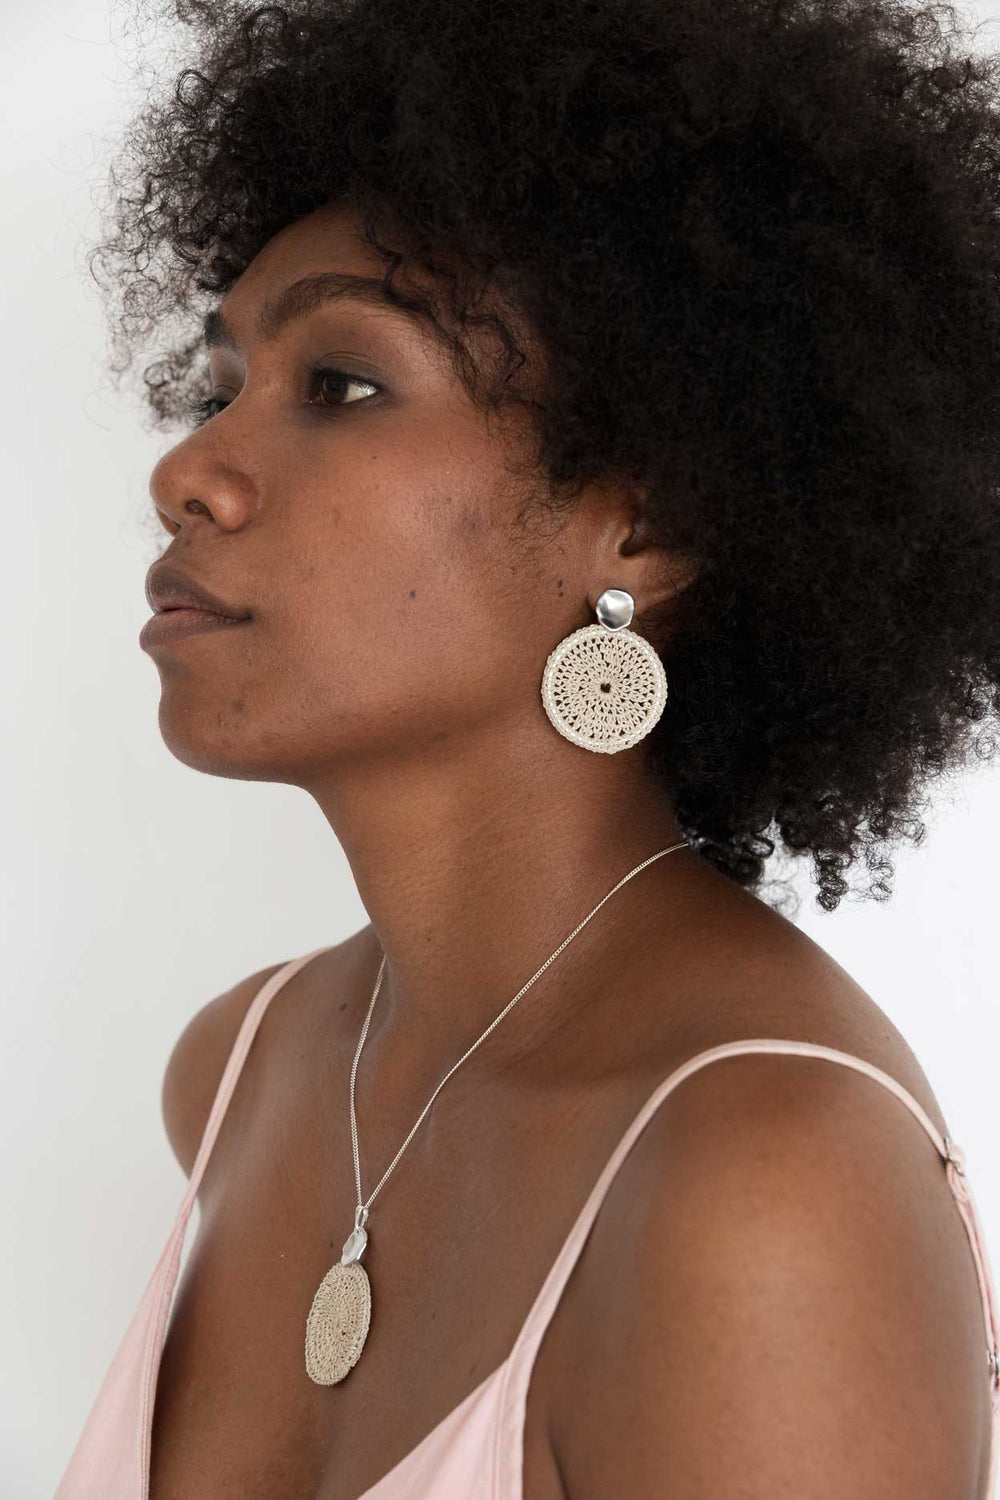 Model wearing Bilum and Bilas sowana disc earrings - Crochet woven disc earrings with silver ear post